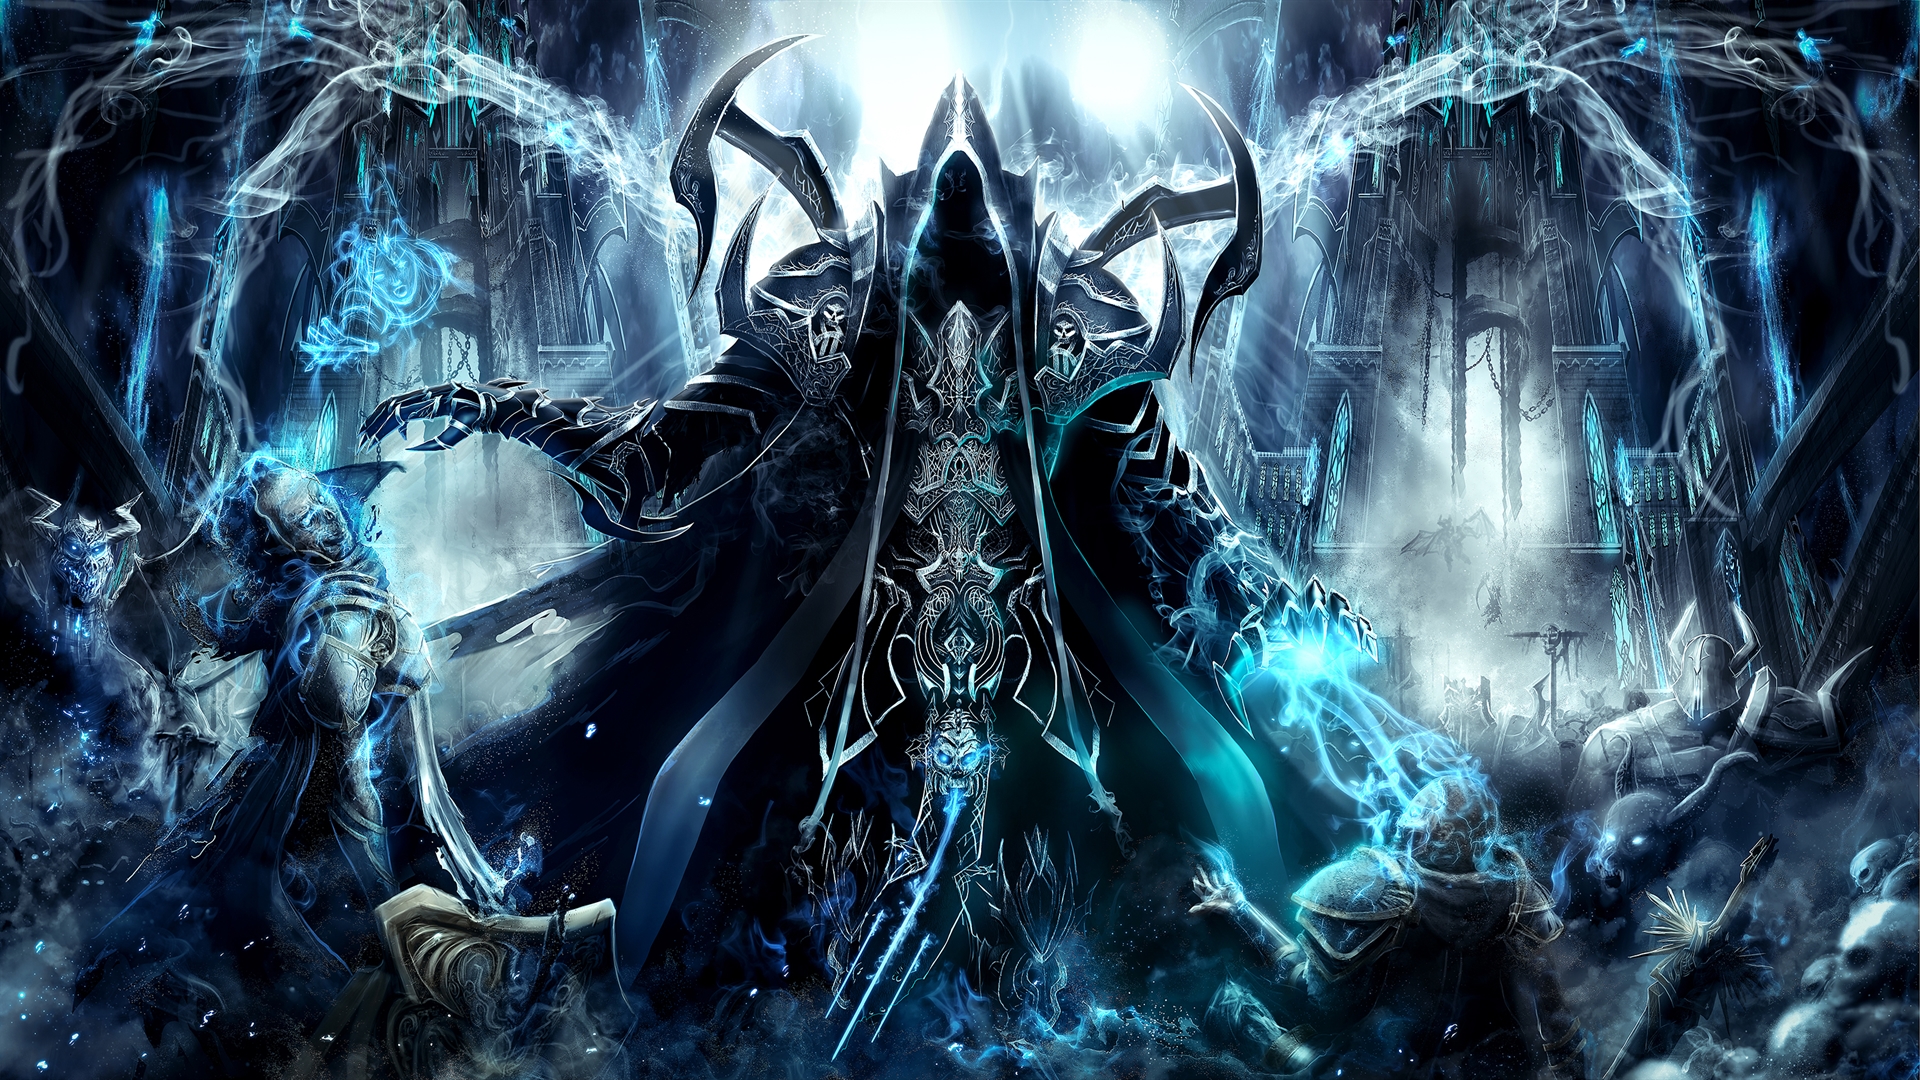 HQ Diablo III: Reaper Of Souls Wallpapers | File 2027.49Kb